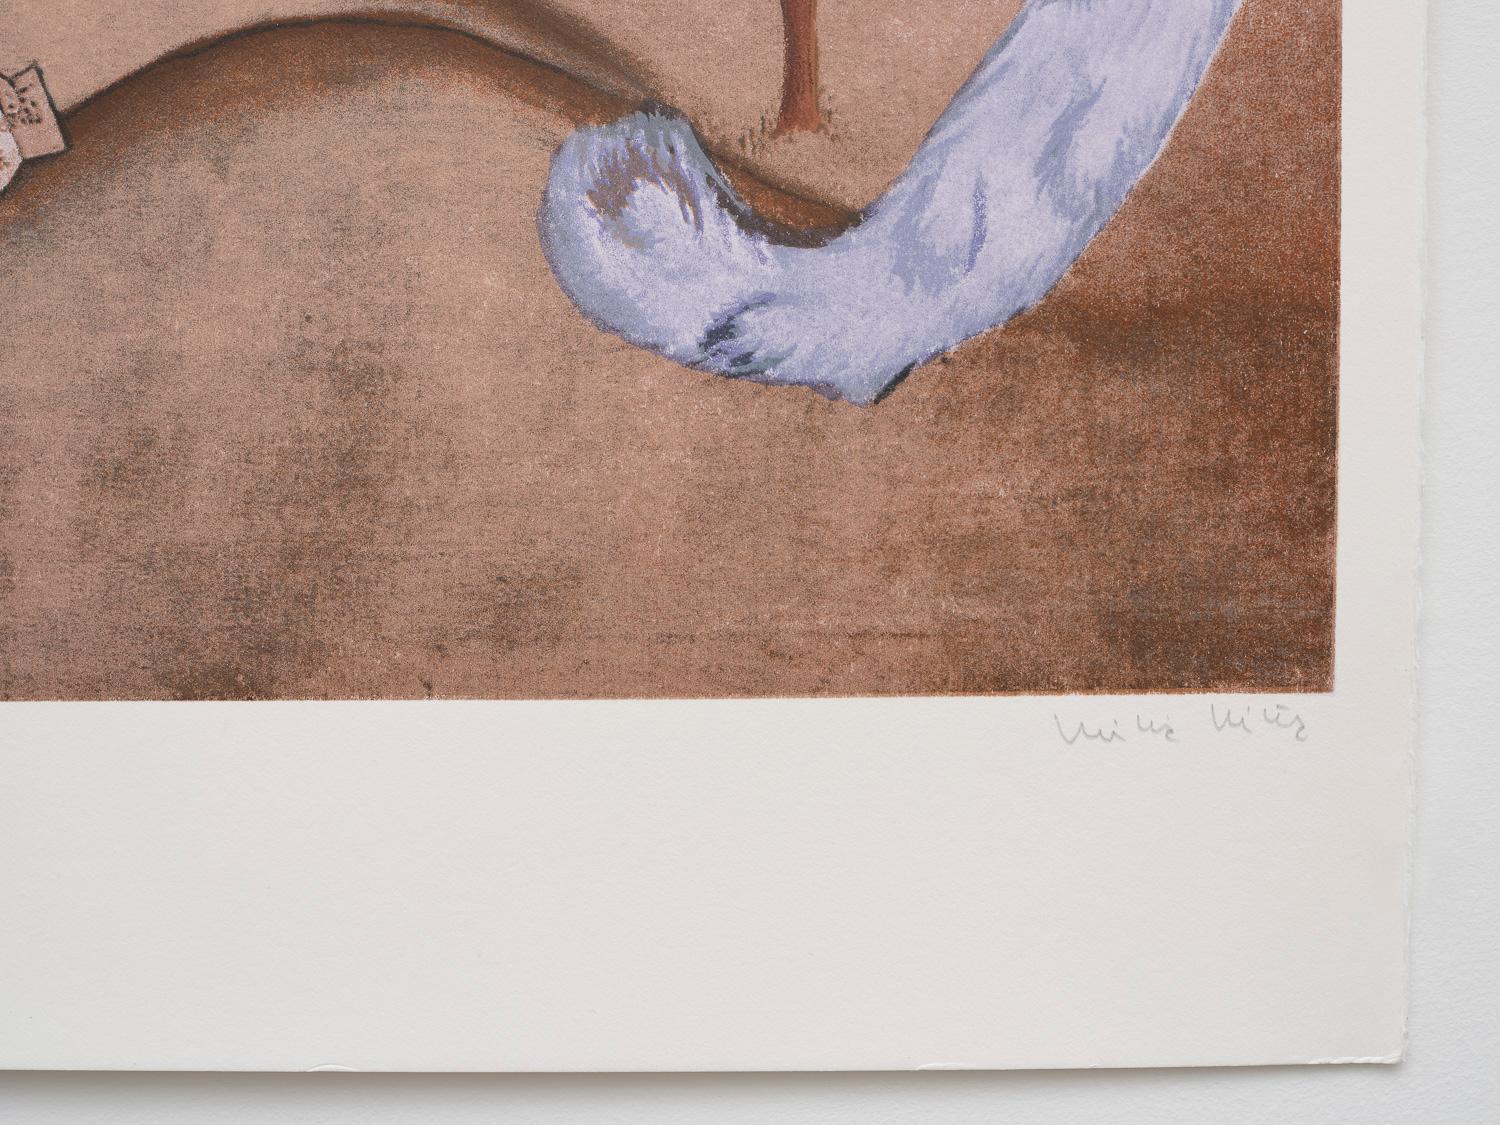 Dans cette œuvre, Vicuña représente son petit ami de l'époque, l'artiste et écrivain chilien Claudio Bertoni, tenant un livre de poésie ouvert dans sa main gauche, tout en plaçant sa main droite sur son cœur. De son oreille pousse une vigne,